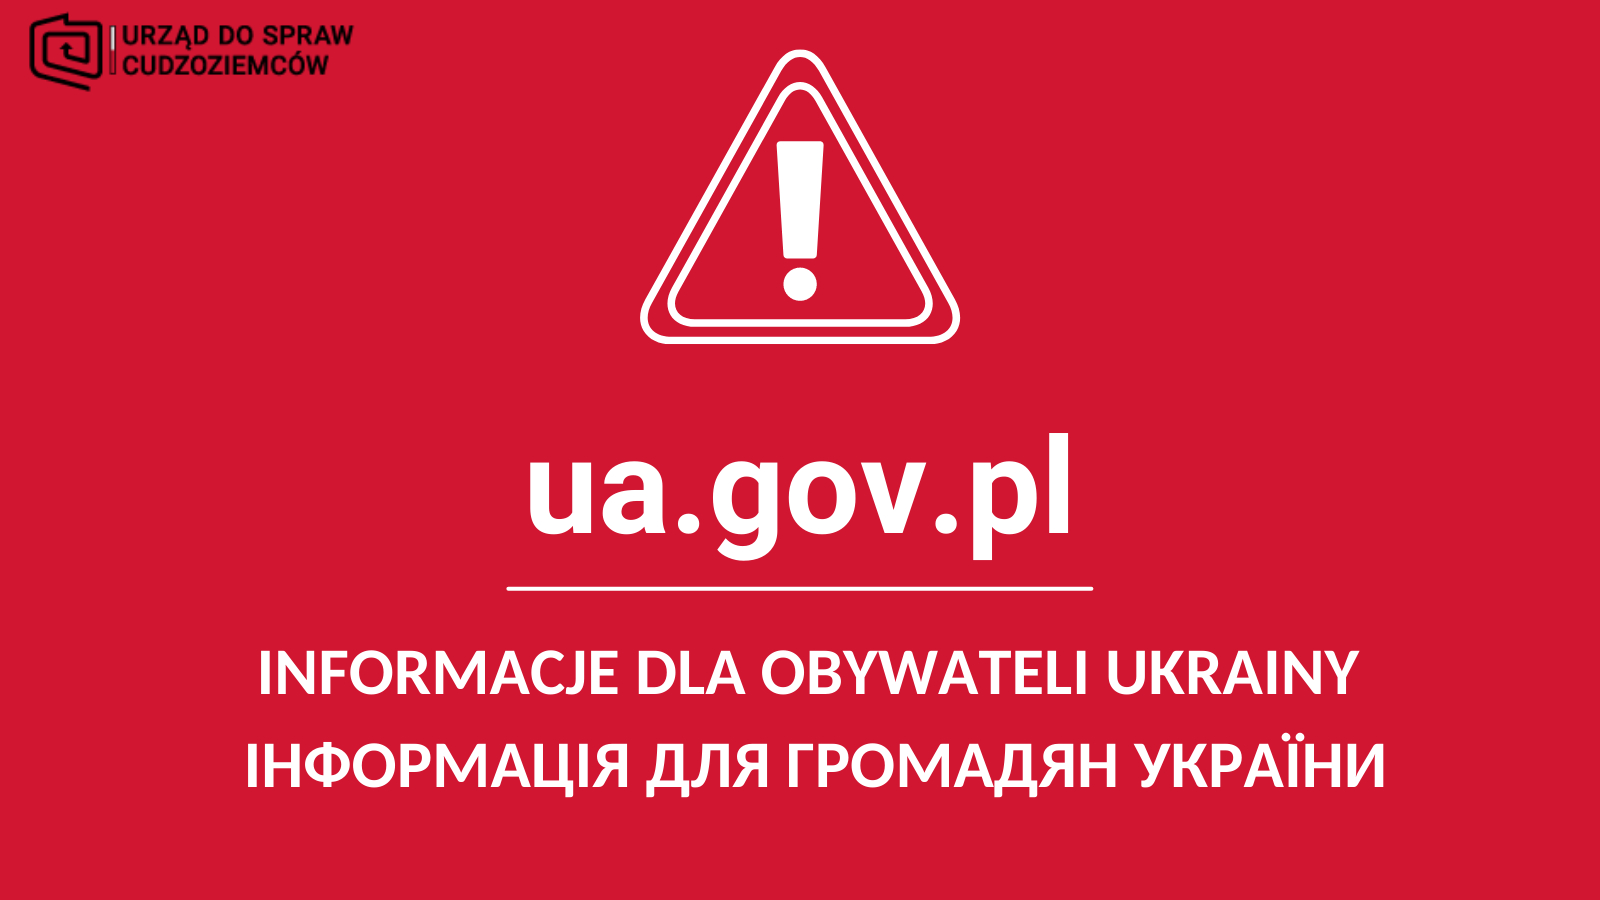 Grafika przedstawia napis Urząd do spraw cudzoziemców - Informacja dla obywateli Ukrainy 